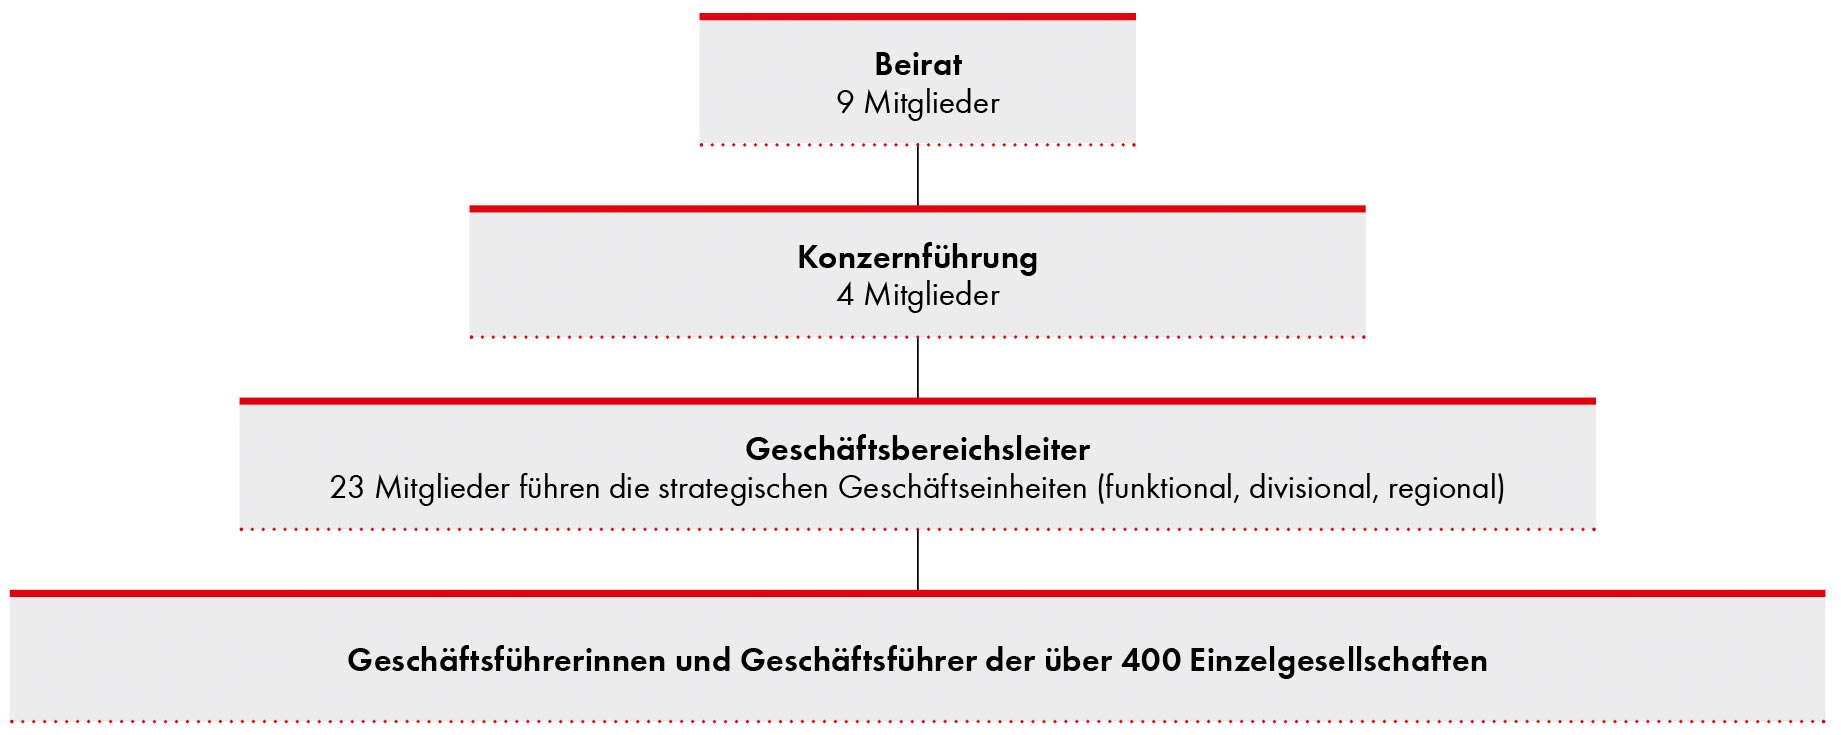 Organisatorische Struktur der Würth-Gruppe 2017